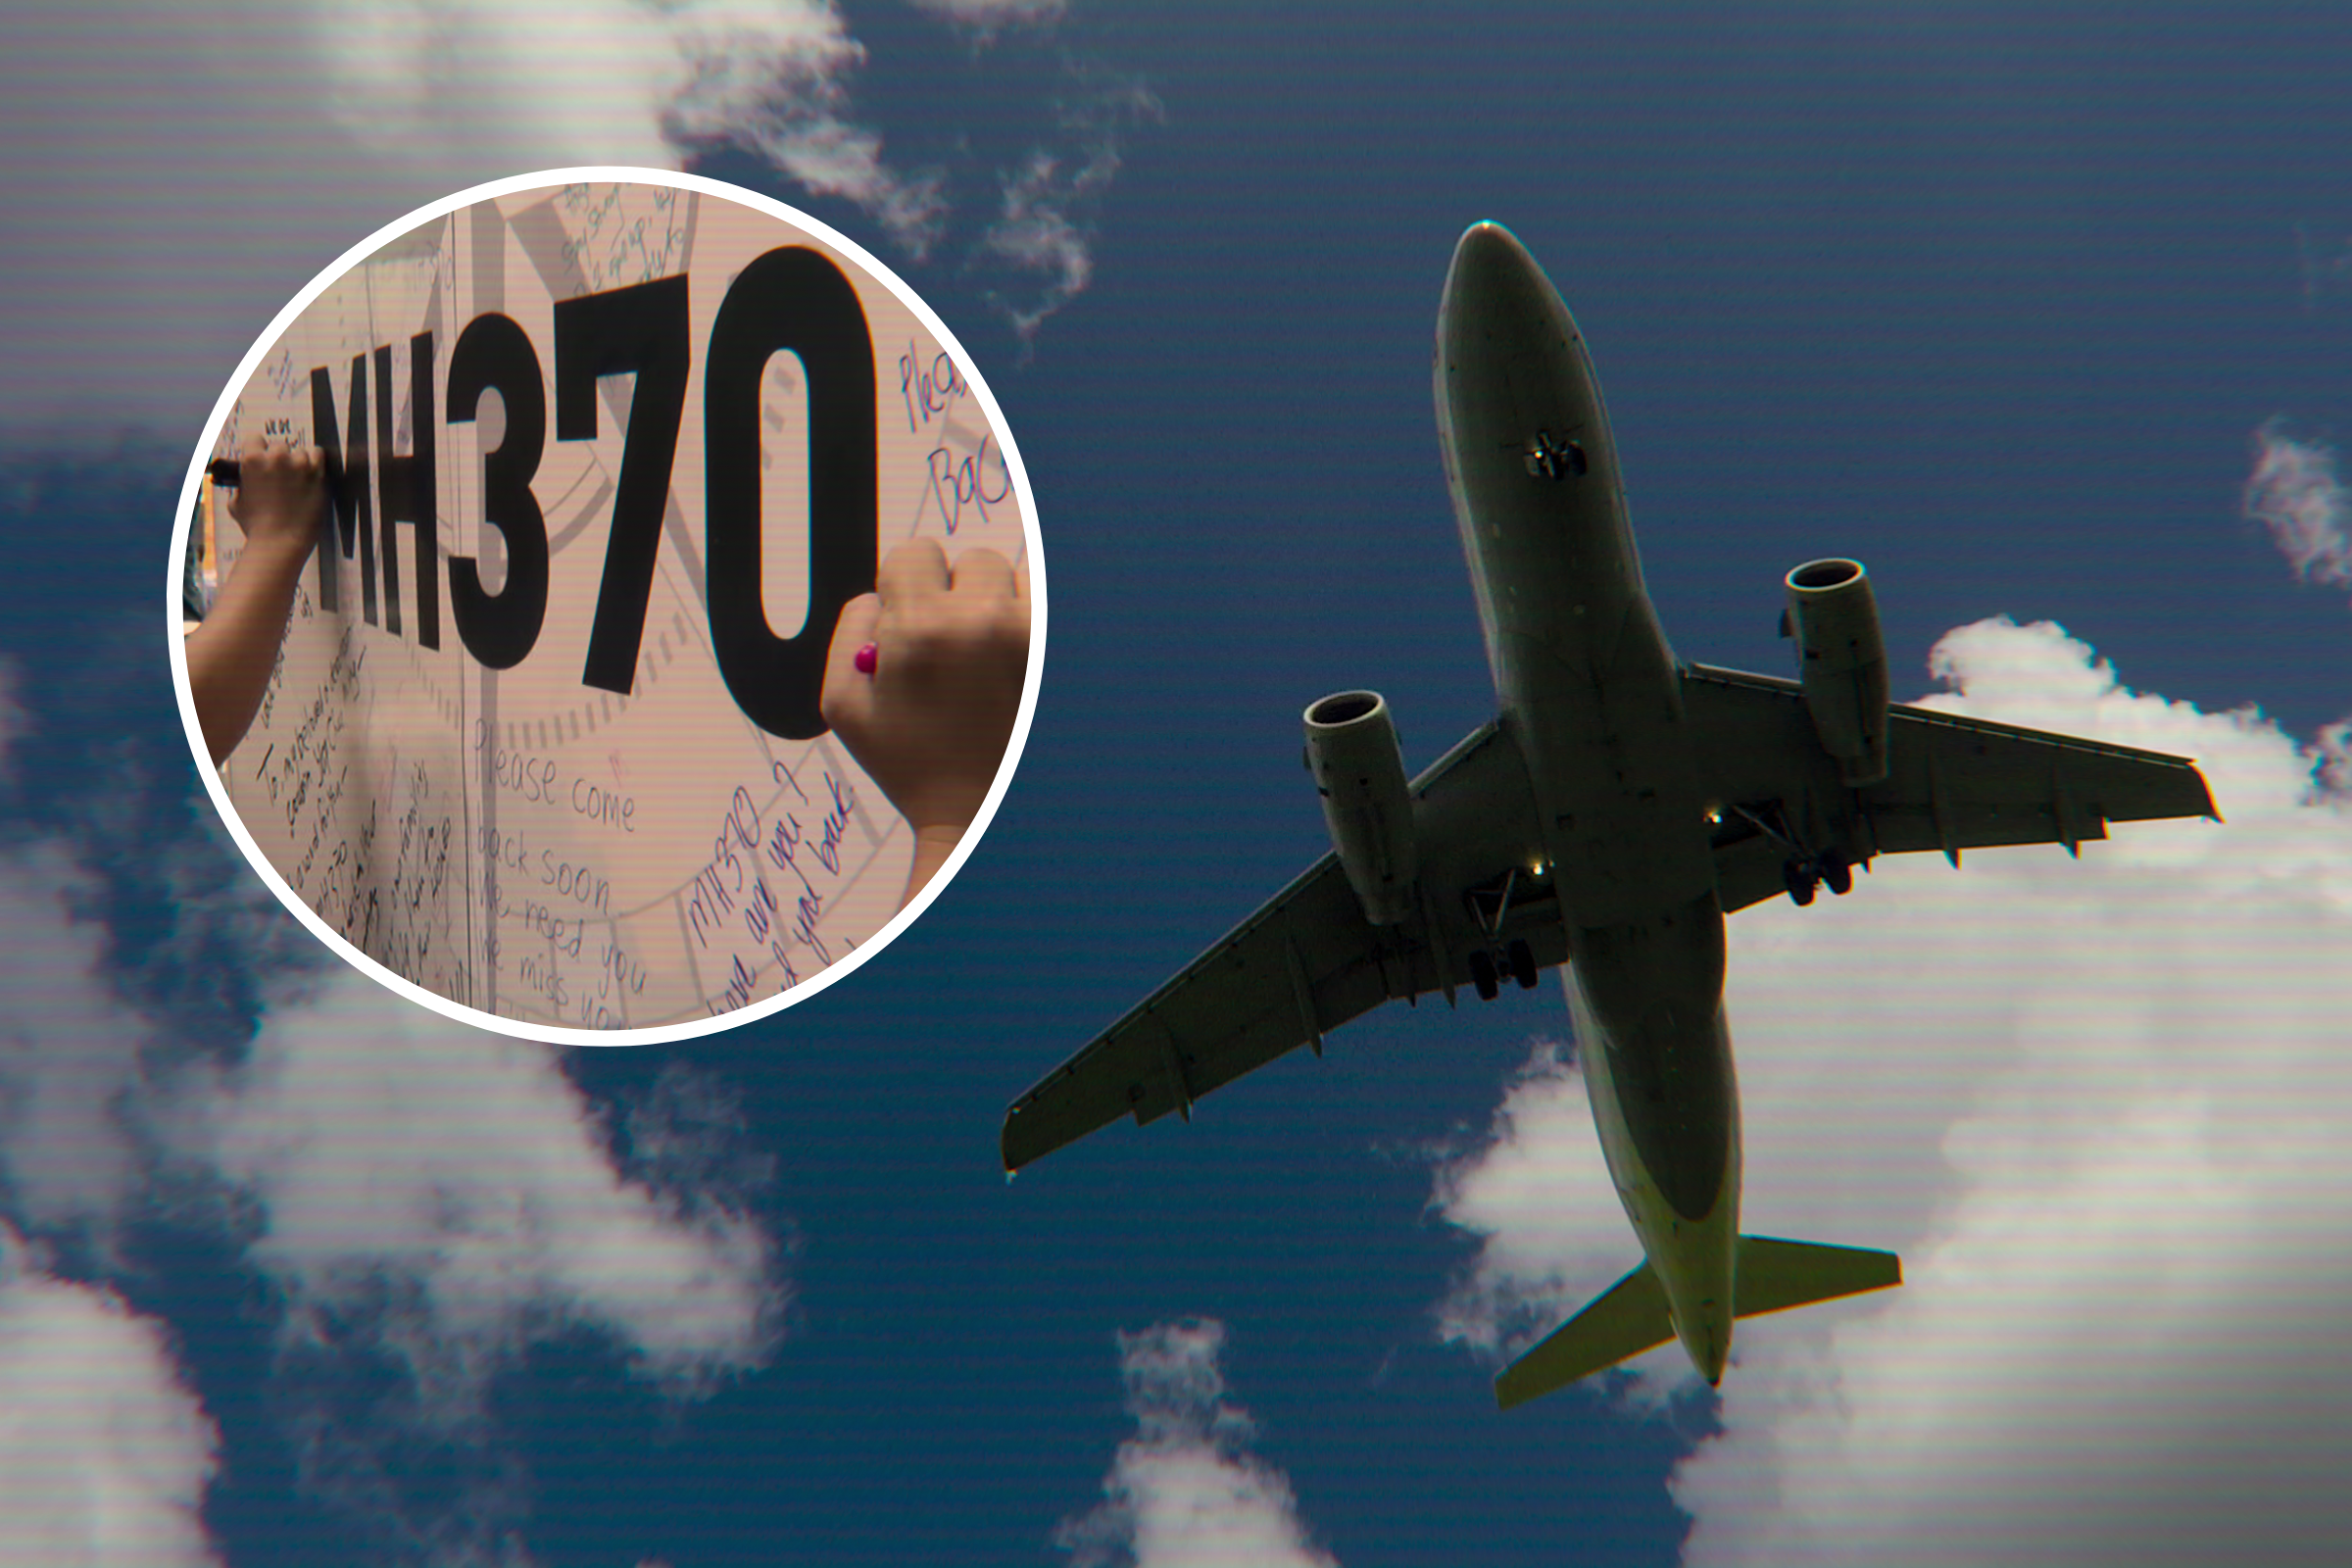 马来西亚航空公司 370 航班发生了什么事？  5 理论解释